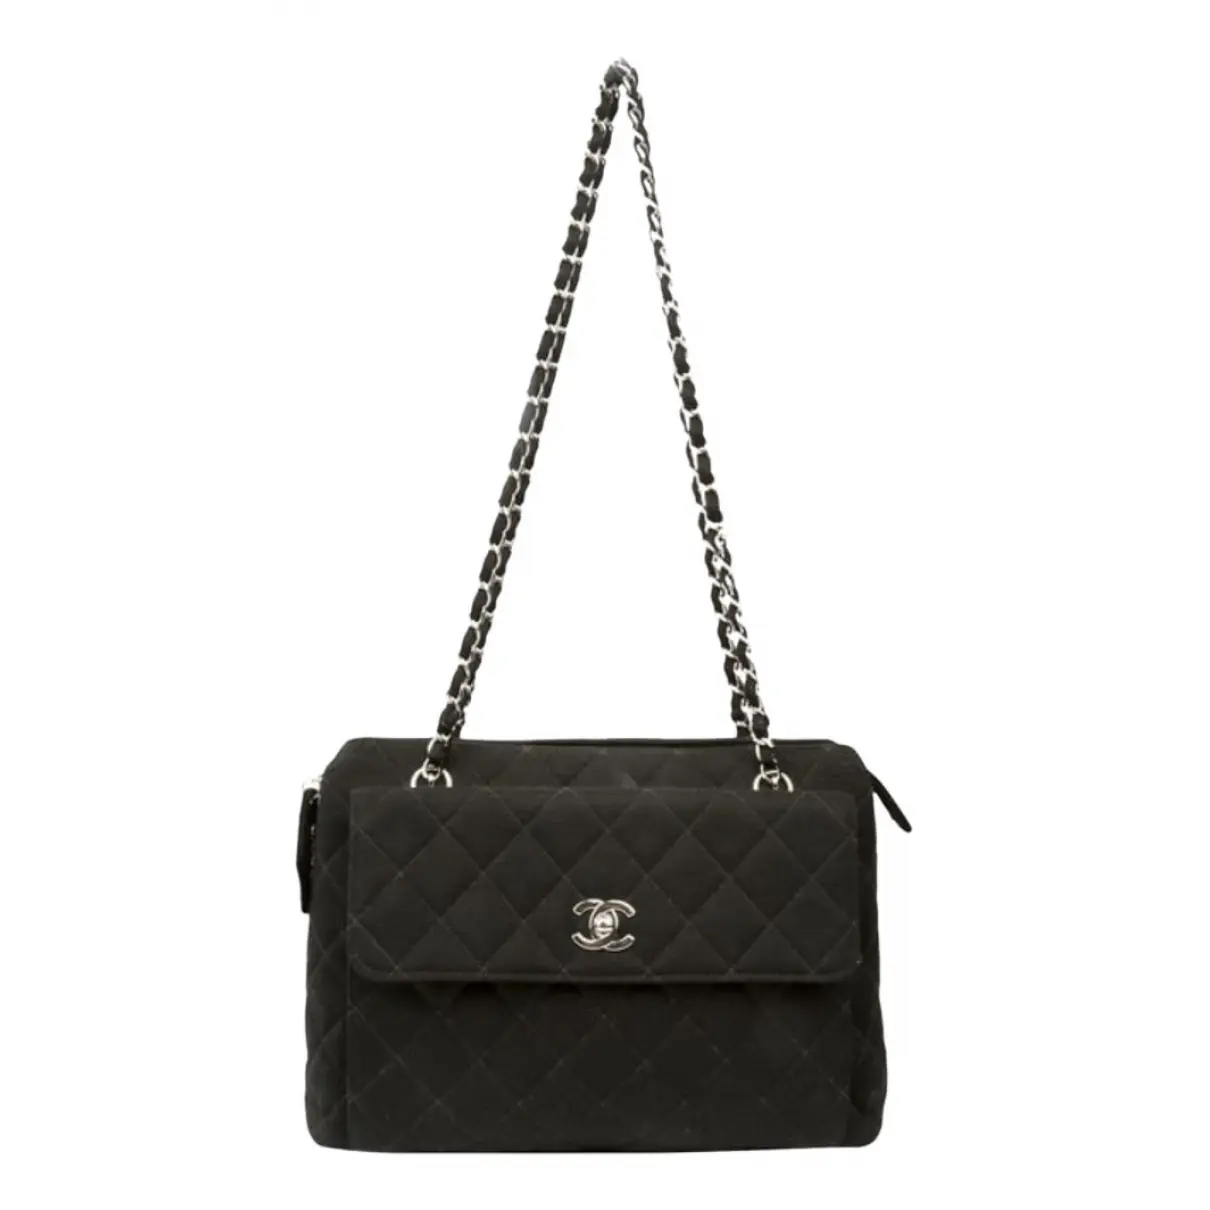 Coco Luxe handbag